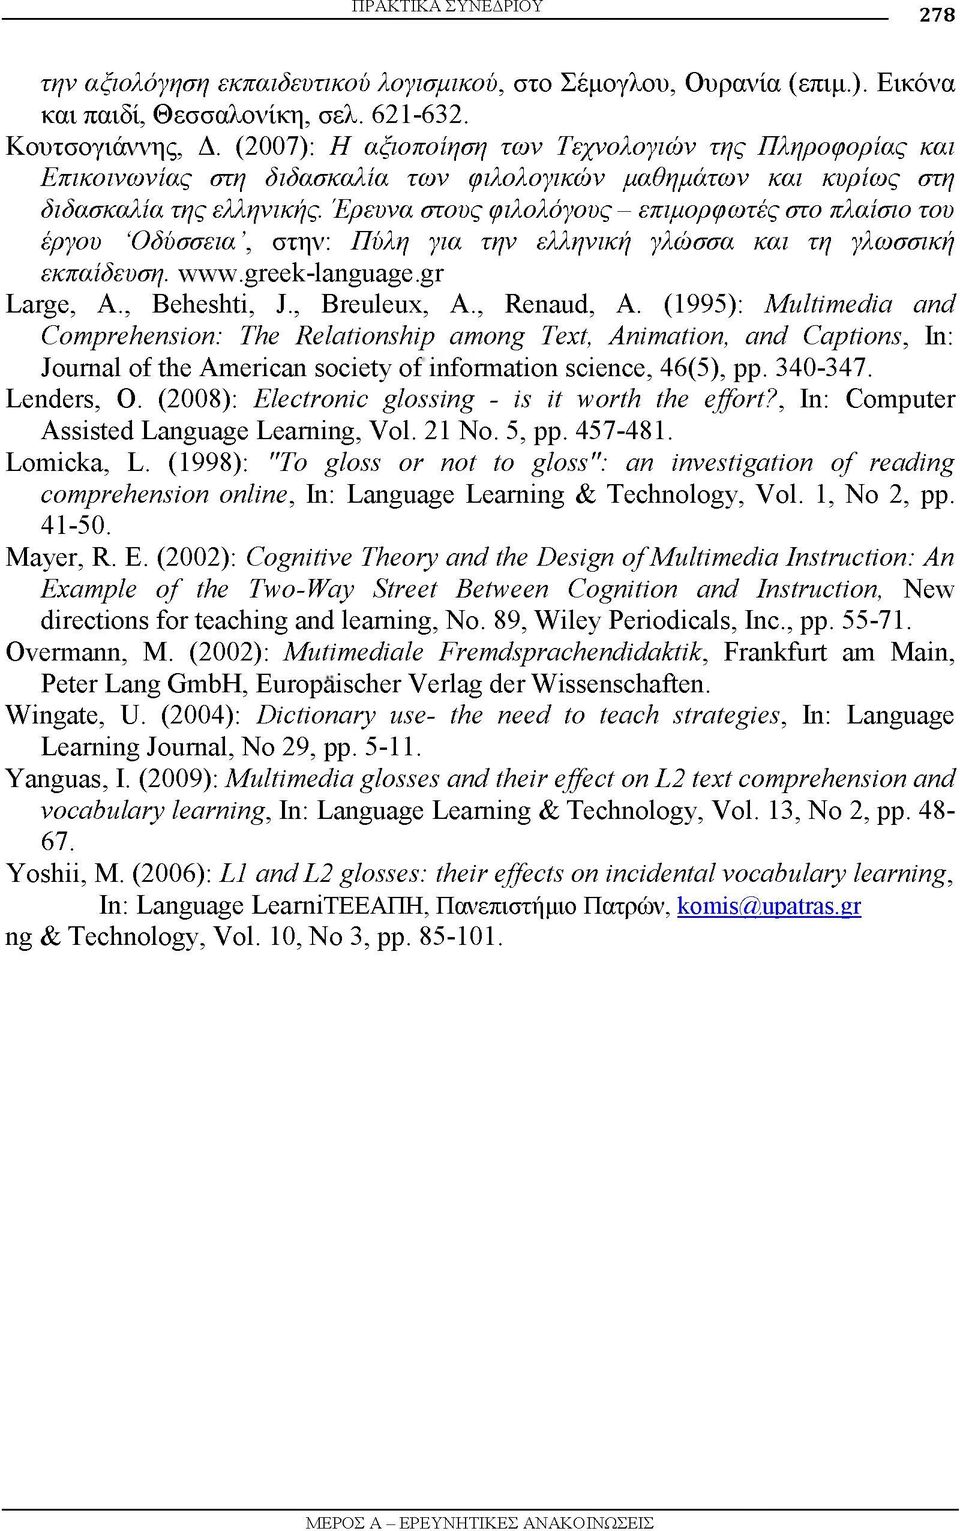 Έρευνα στους φιλολόγους - επιμορφωτές στο πλαίσιο του έργου Οδύσσεια, στην: Πύλη για την ελληνική γλώσσα και τη γλωσσική εκπαίδευση. www.greek-language.gr Large, A., Beheshti, J., Breuleux, A.